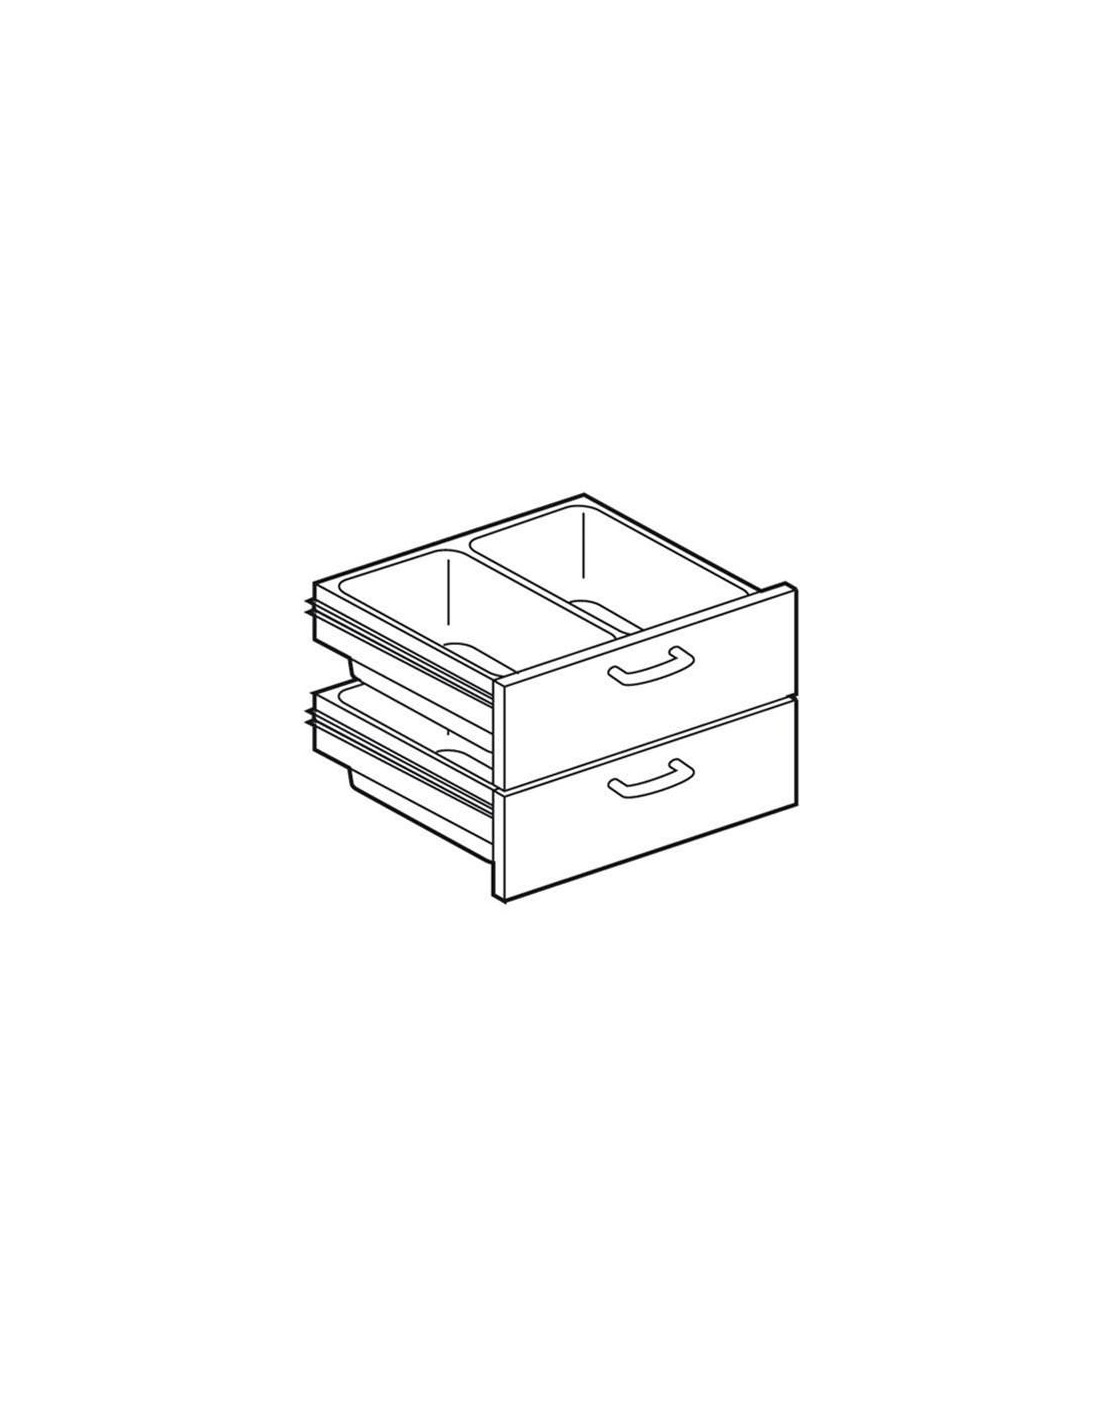 Cassettiera 400 per piani lavoro neutri -  2 cassetti e n. 2 bacinelle in plastica GN 1/1 H15 - cm 39.5 x 59. x 47.5 h